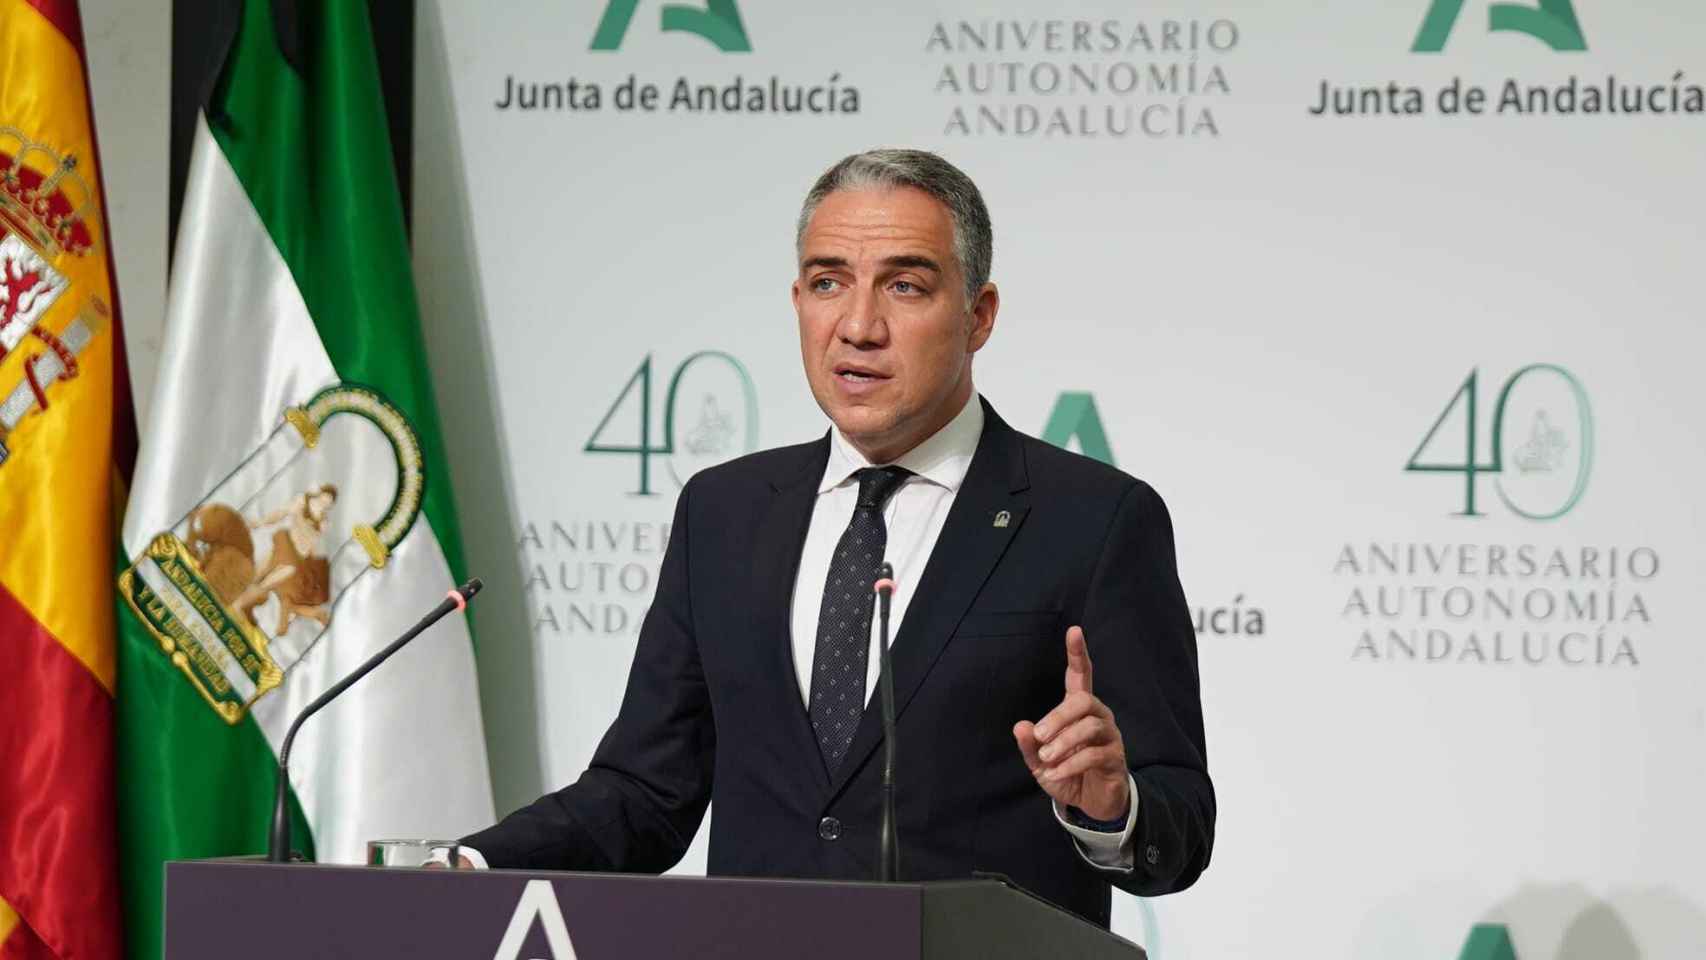 El portavoz del Gobierno andaluz, Elías Bendodo.